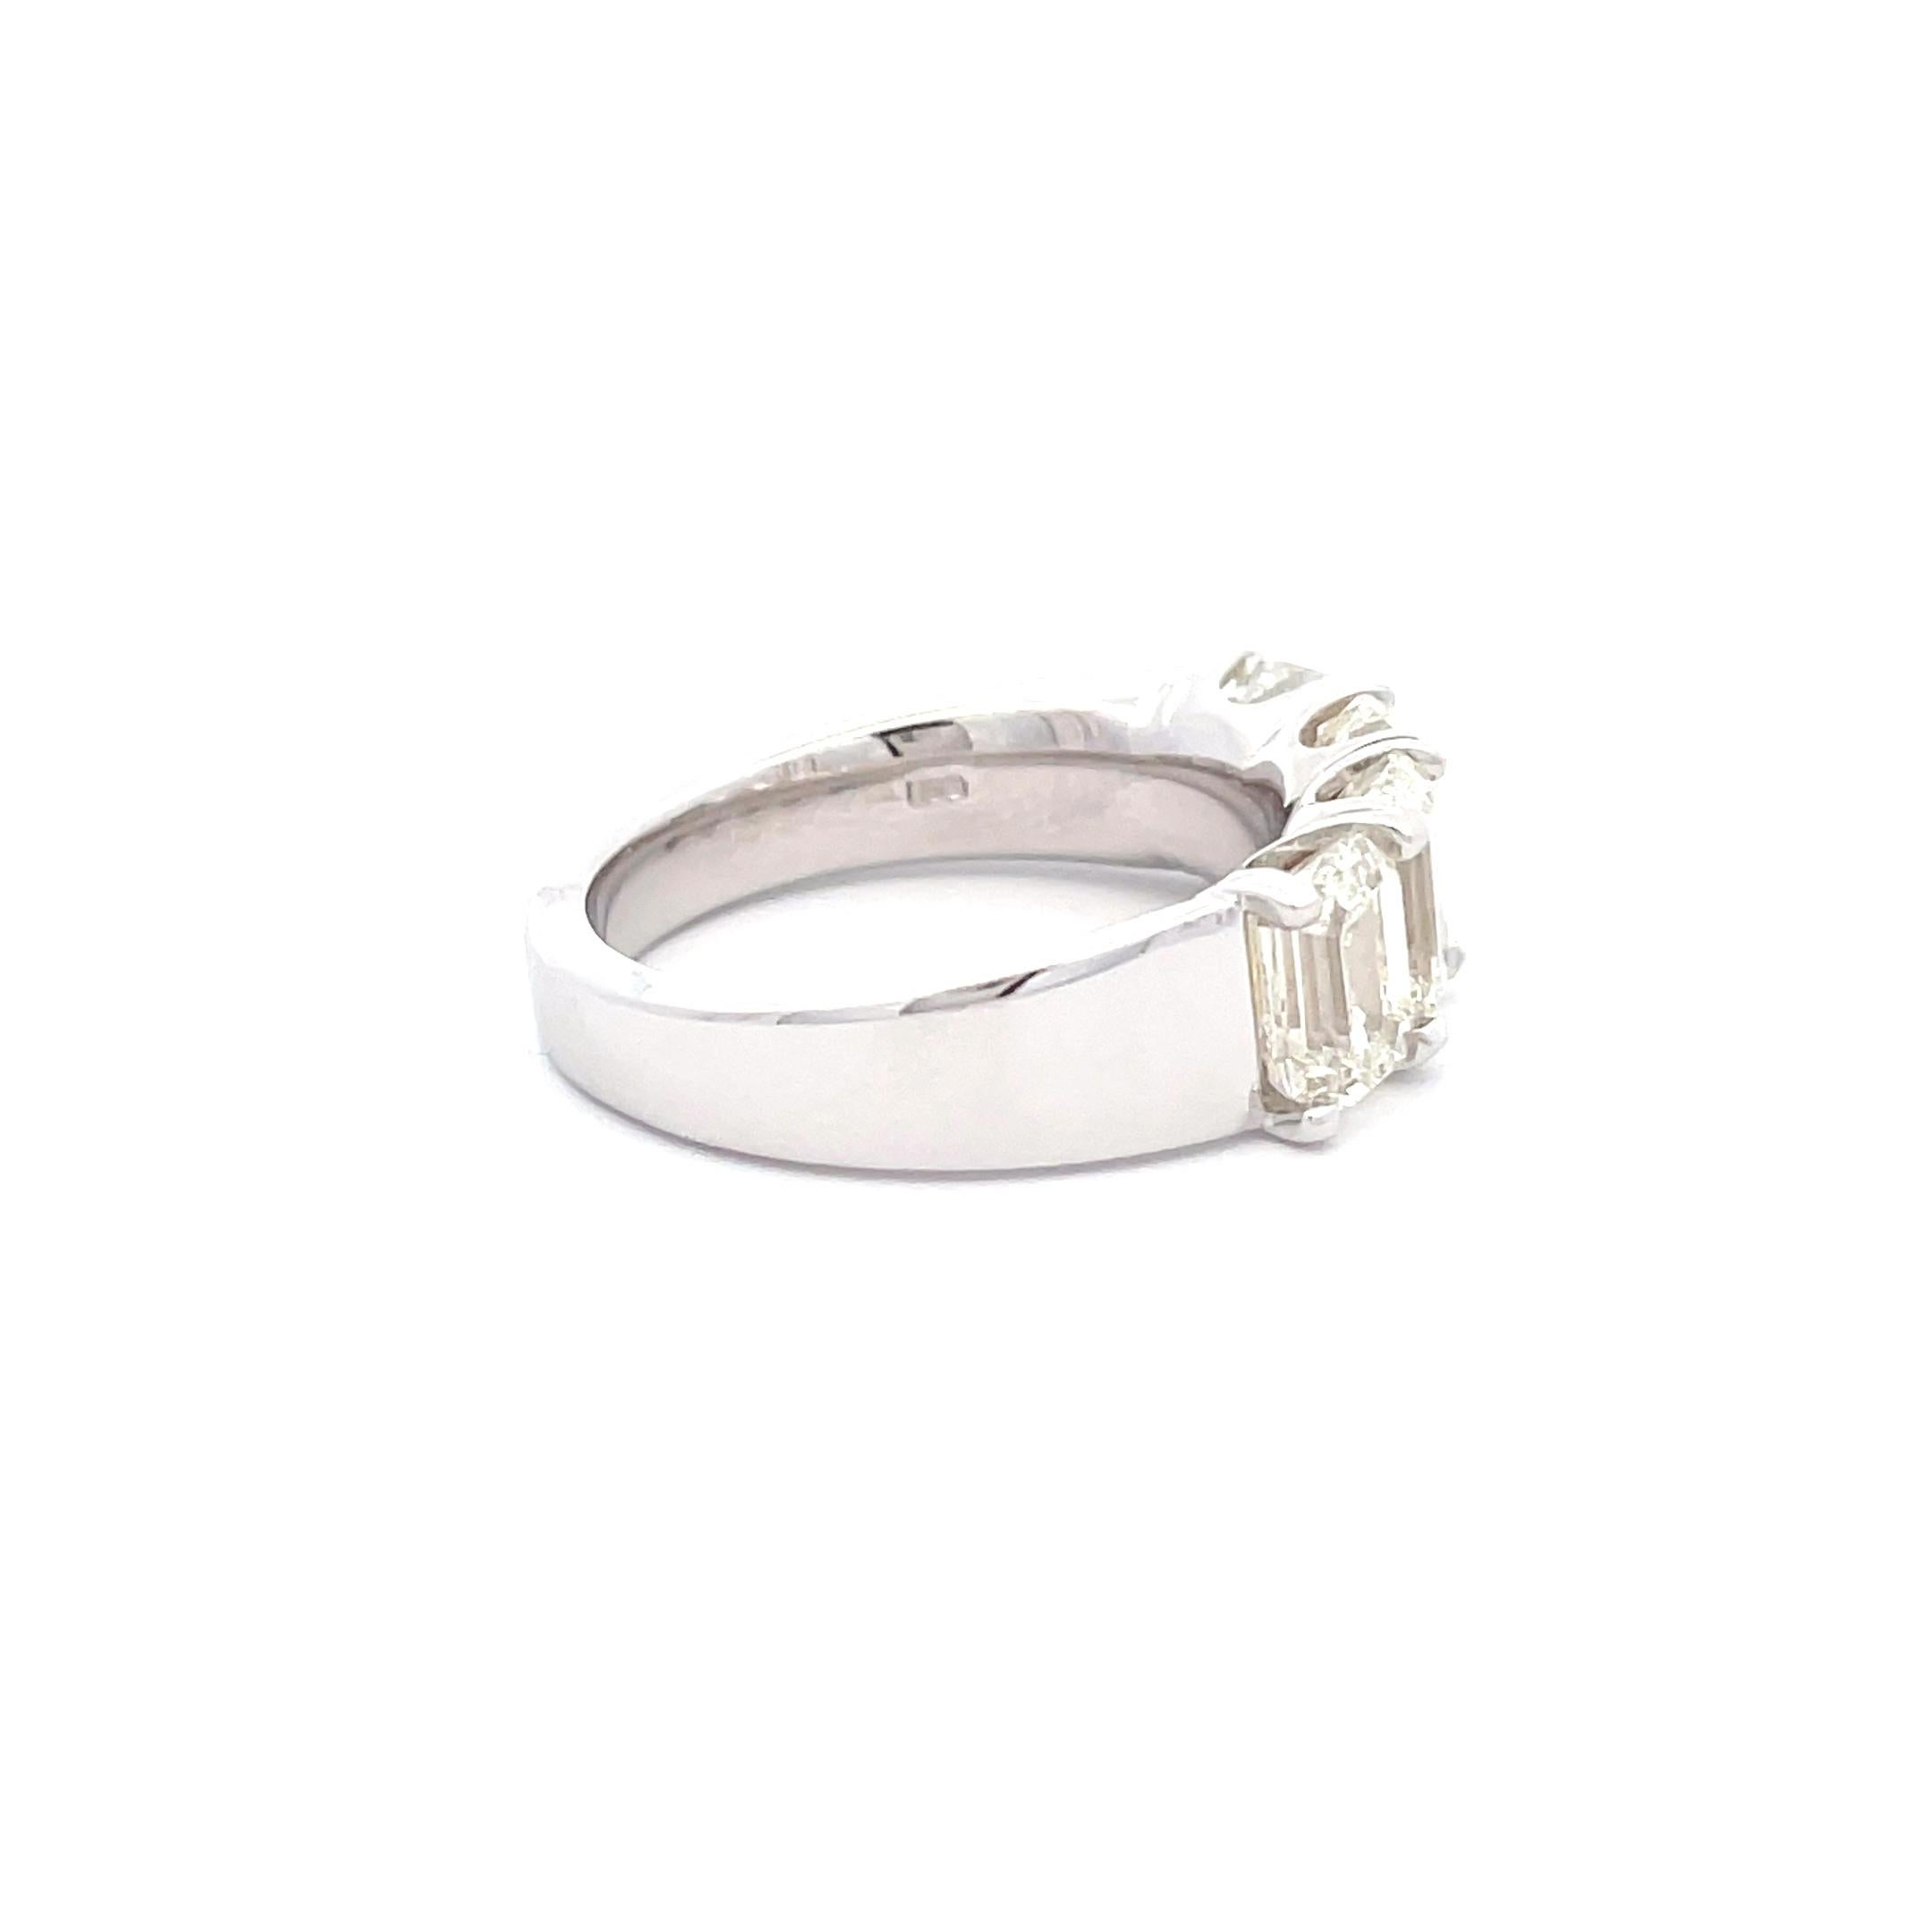 Werten Sie Ihr Ensemble mit unserem exquisiten Ring aus 18 Karat Weißgold mit 4,03 Karat weißem Diamant im Smaragdschliff auf. Dieser perfekt gearbeitete Ring besticht durch einen weißen Diamanten im Smaragdschliff, der mit seiner faszinierenden